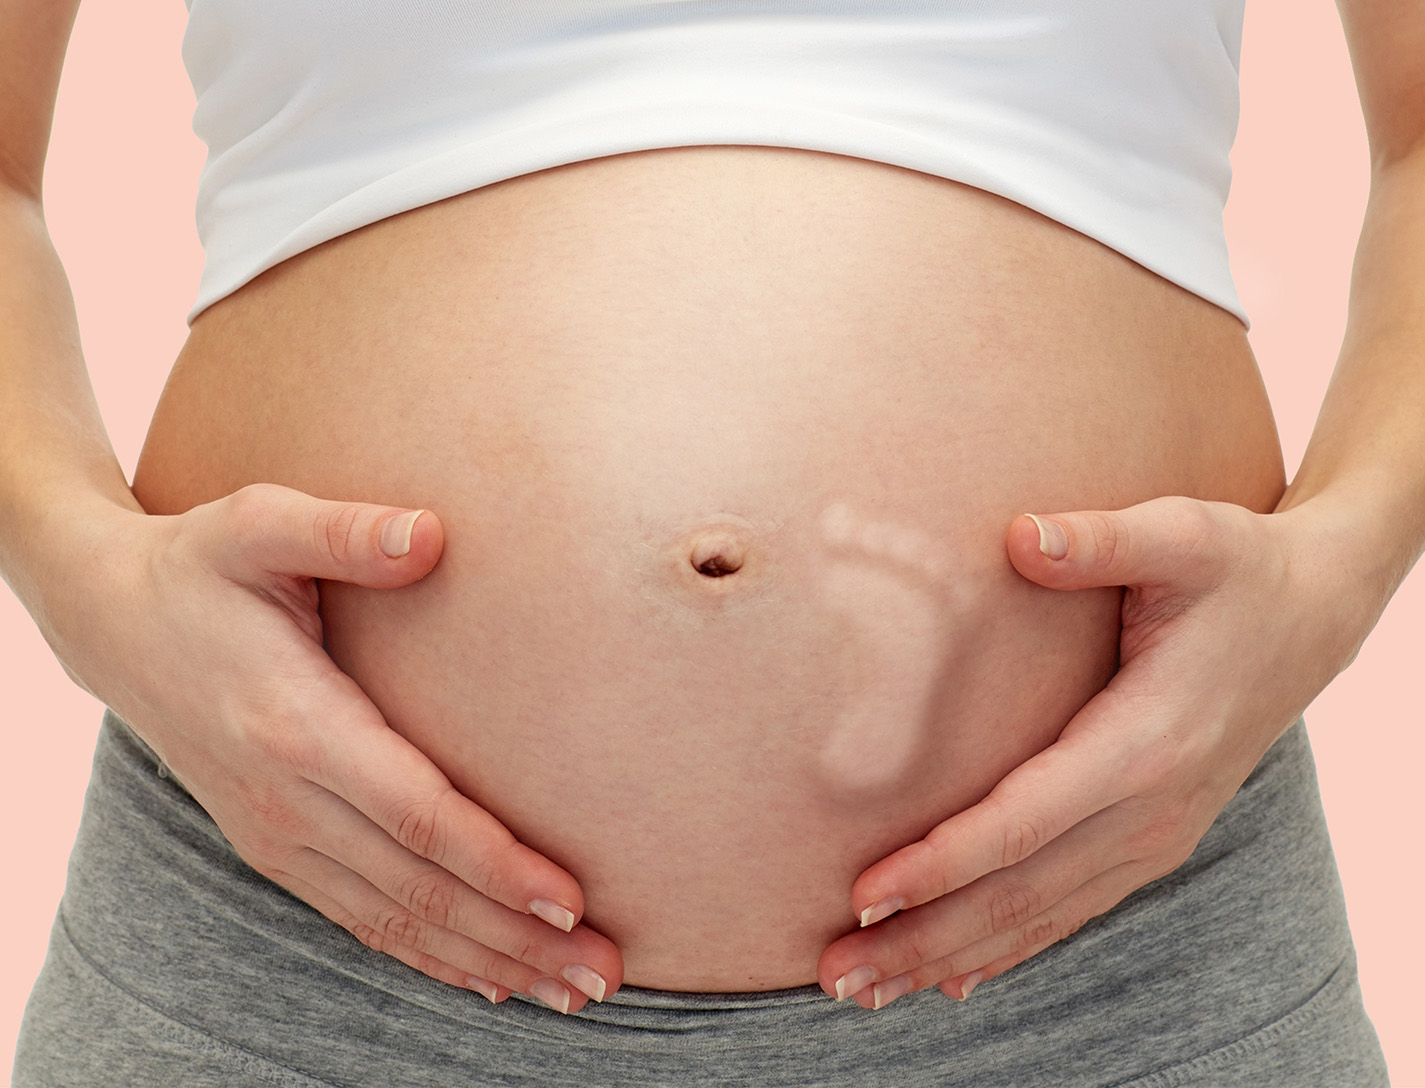 ciąża 30 tydzień wielkość brzucha niemowlę nóżka formommy